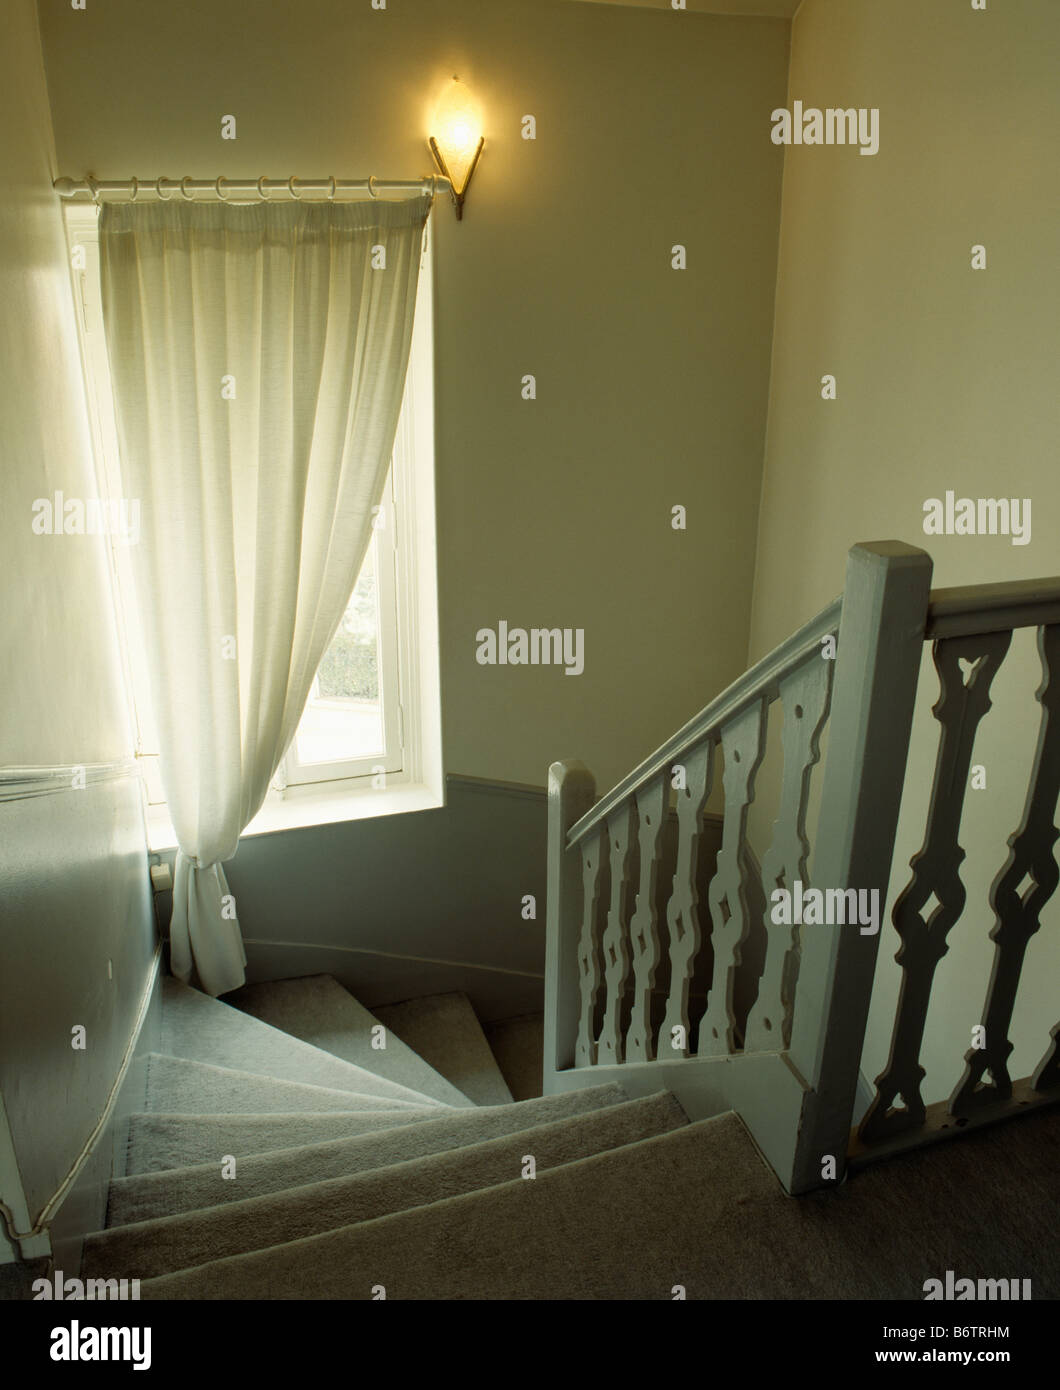 Regardant vers le bas escalier avec balustrade gris pâle à la fenêtre avec  rideau voile crème Photo Stock - Alamy